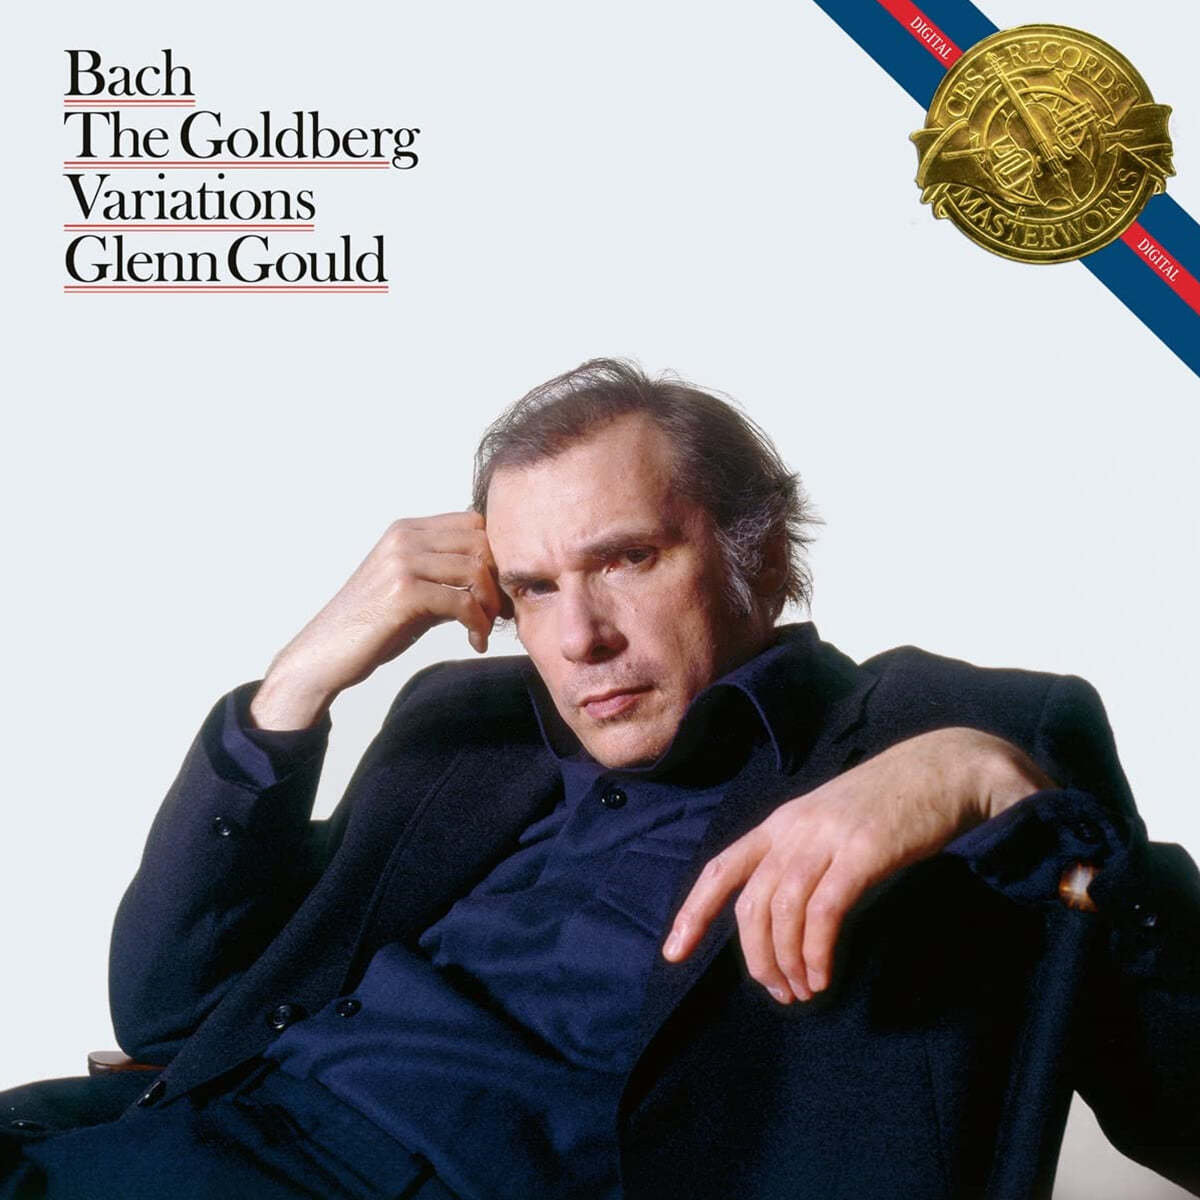 Glenn Gould 바흐: 골드베르크 변주곡 - 글렌 굴드 (Bach: Goldberg  Variations, BWV 988)